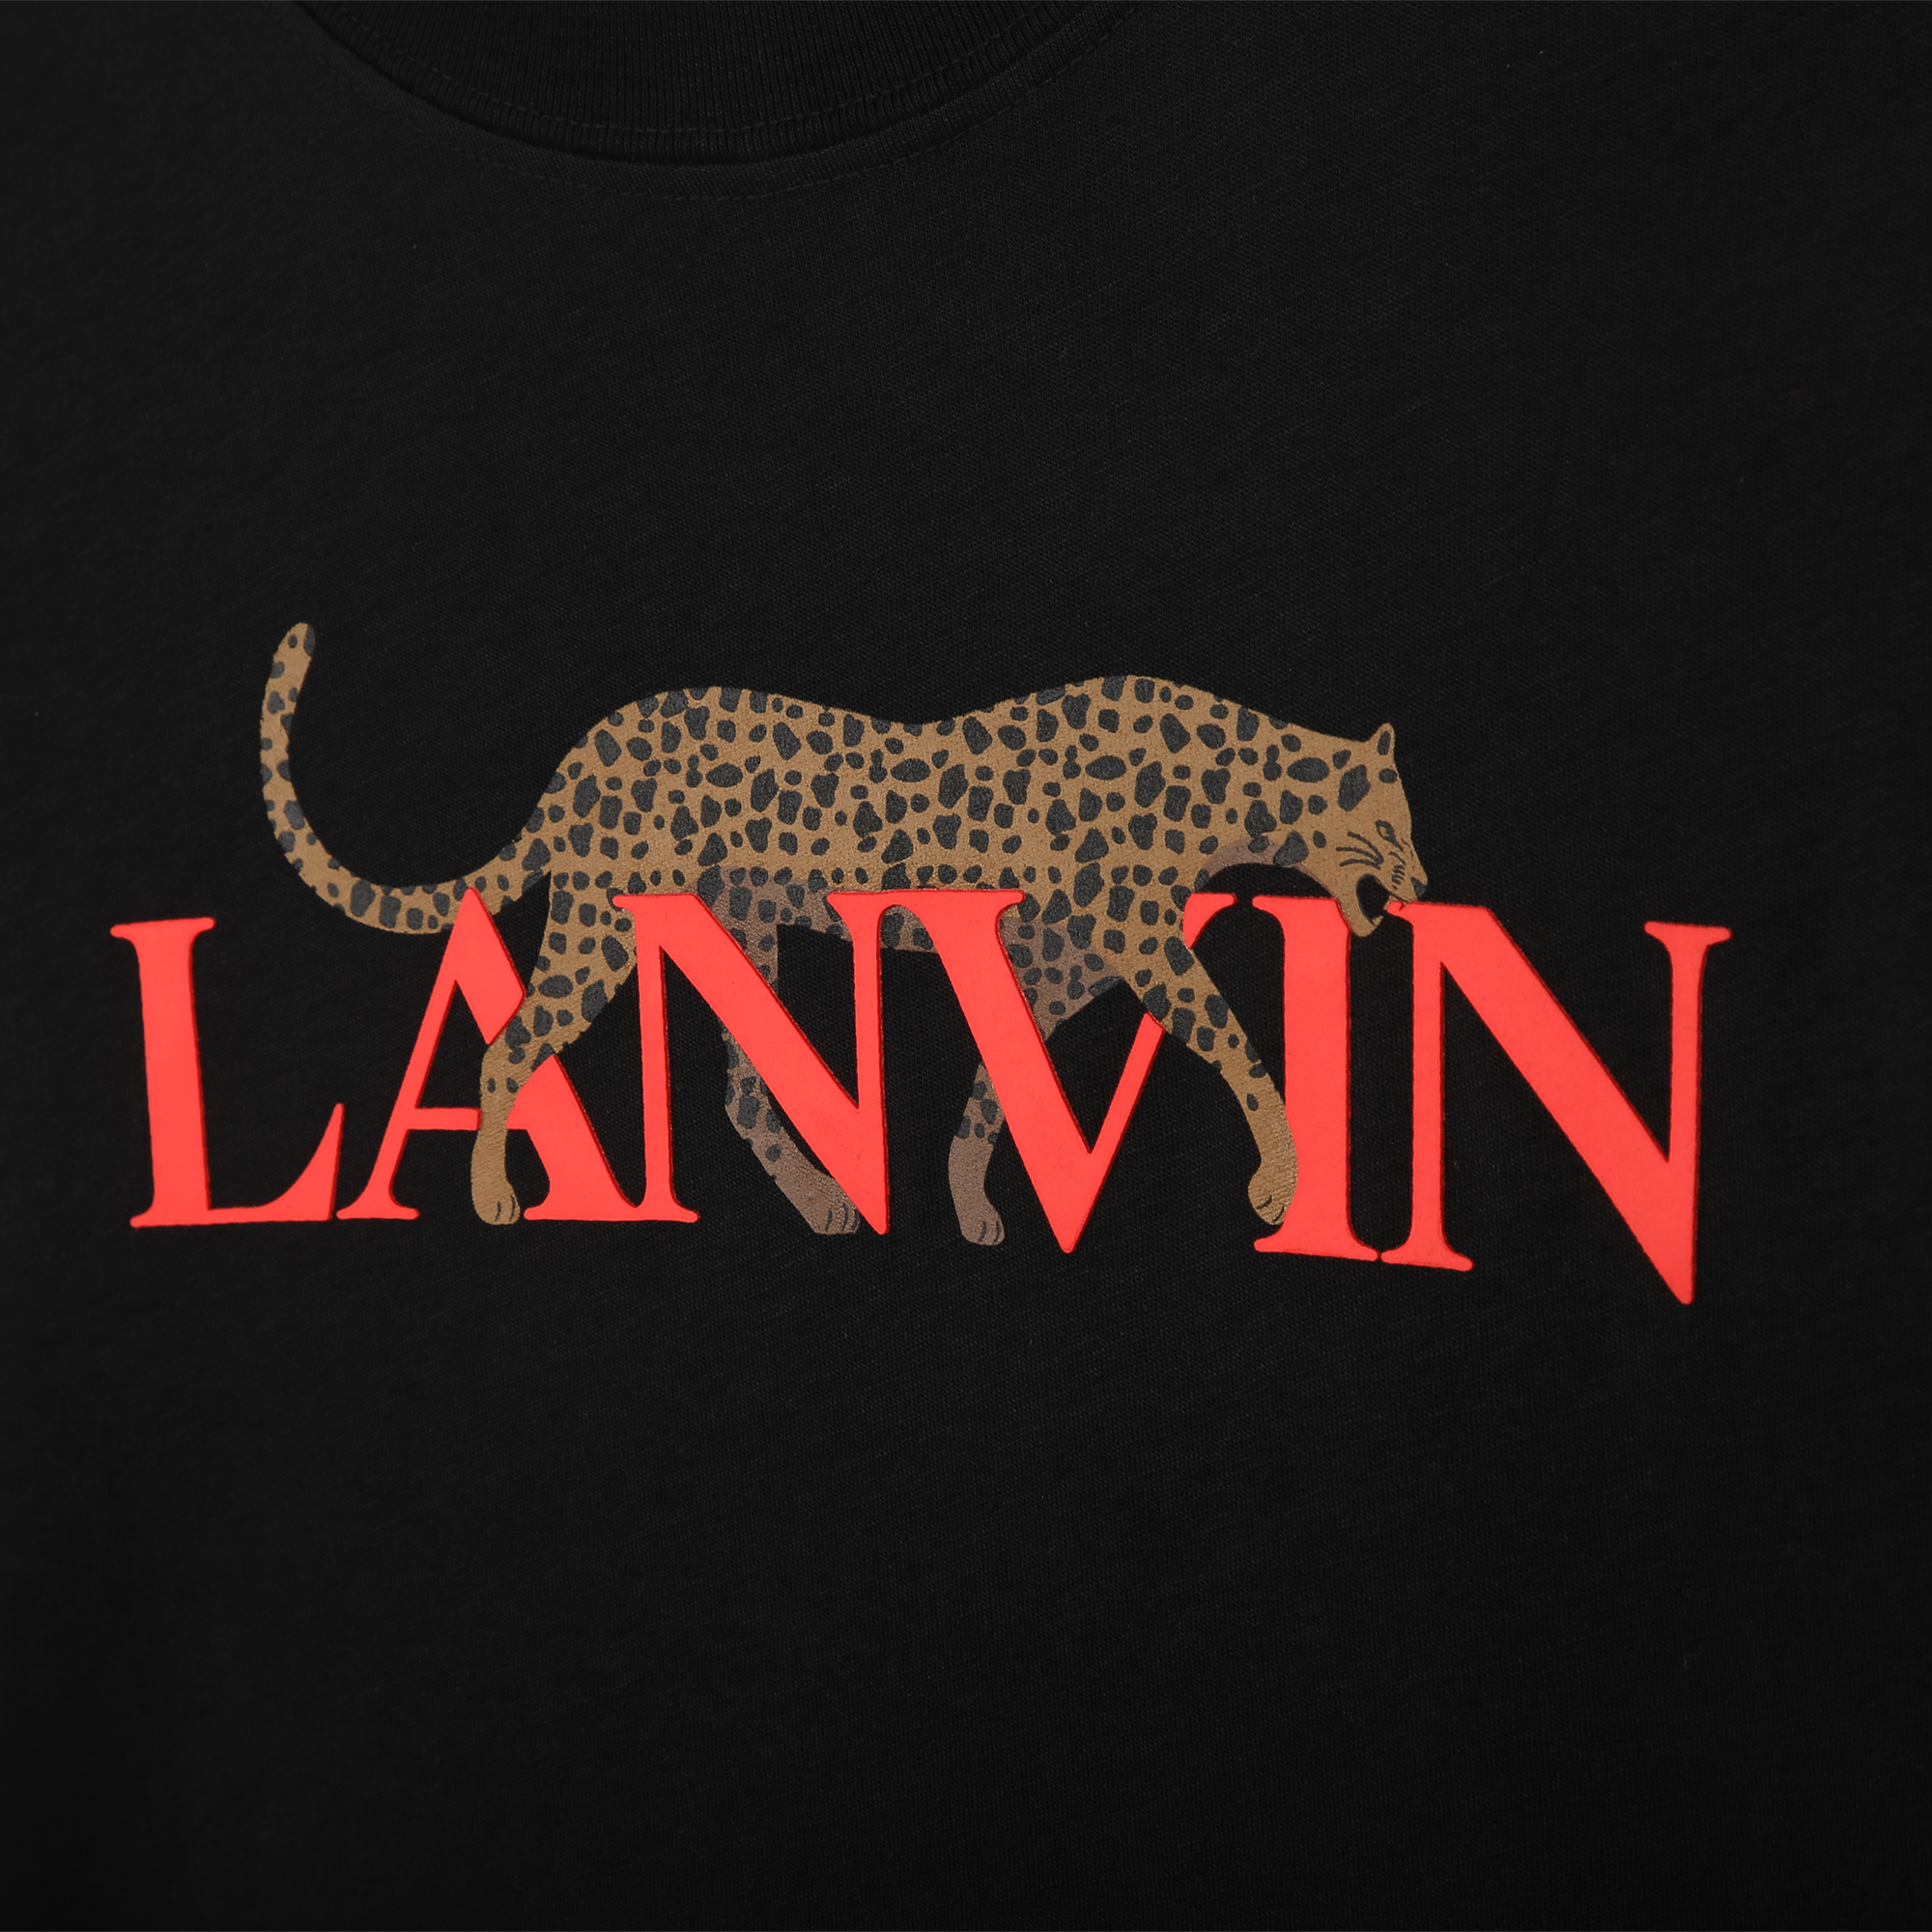 T-shirt imprimé logo et félin LANVIN pour GARCON